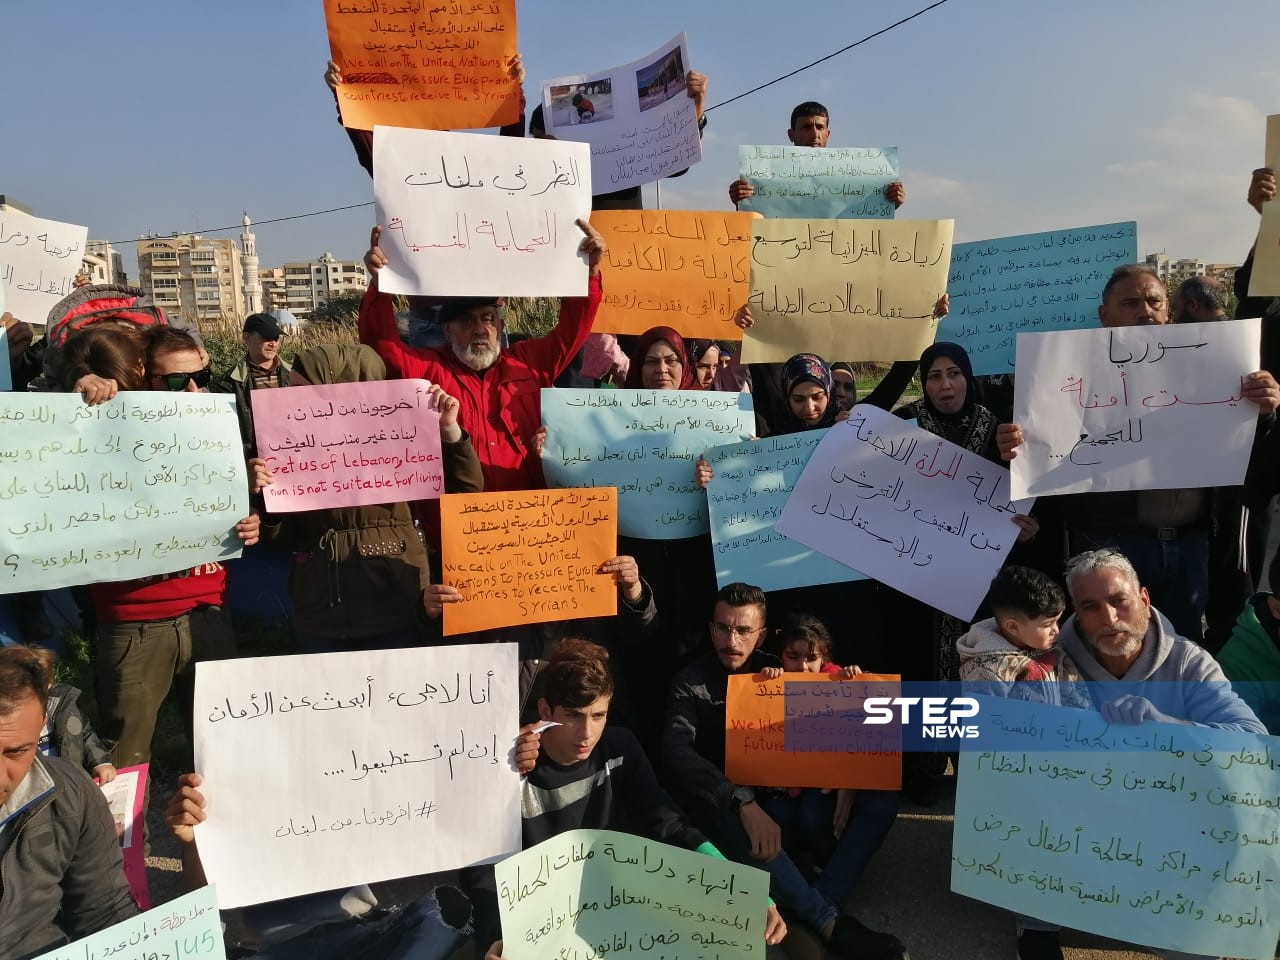 لاجئون سوريون يحتجون أمام مركز الأمم المتحدة في طرابلس لتأمين الحماية والمساعدات (فيديو - صور)